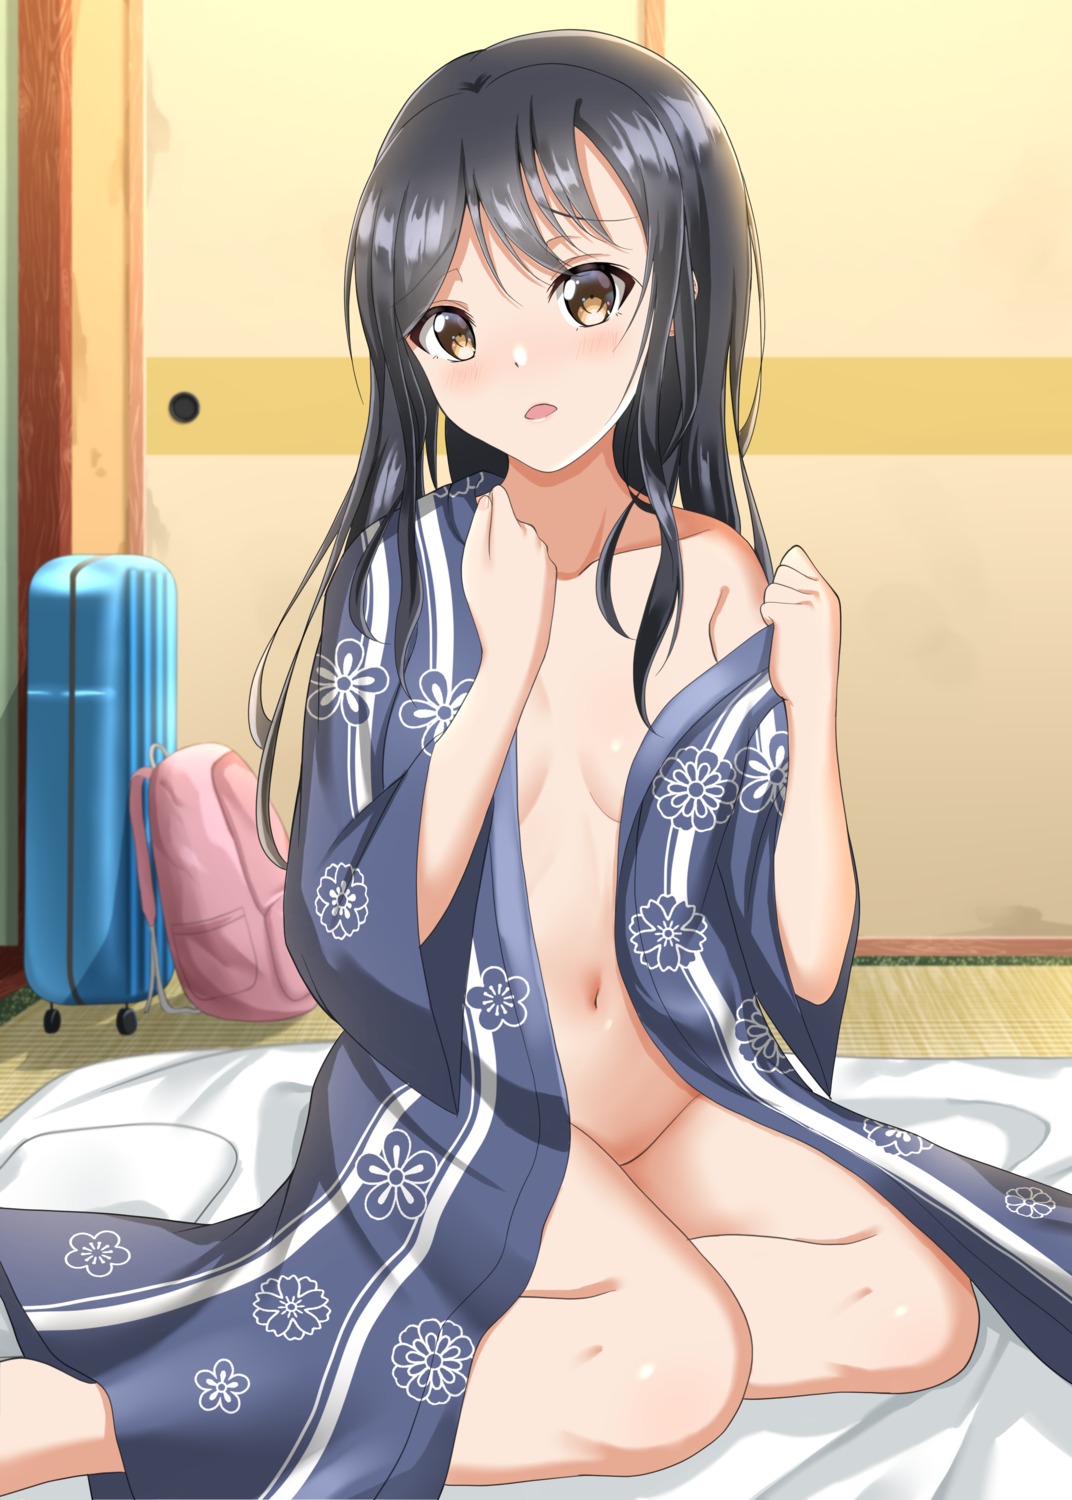 hominotsu no_bra nopan open_shirt undressing yukata